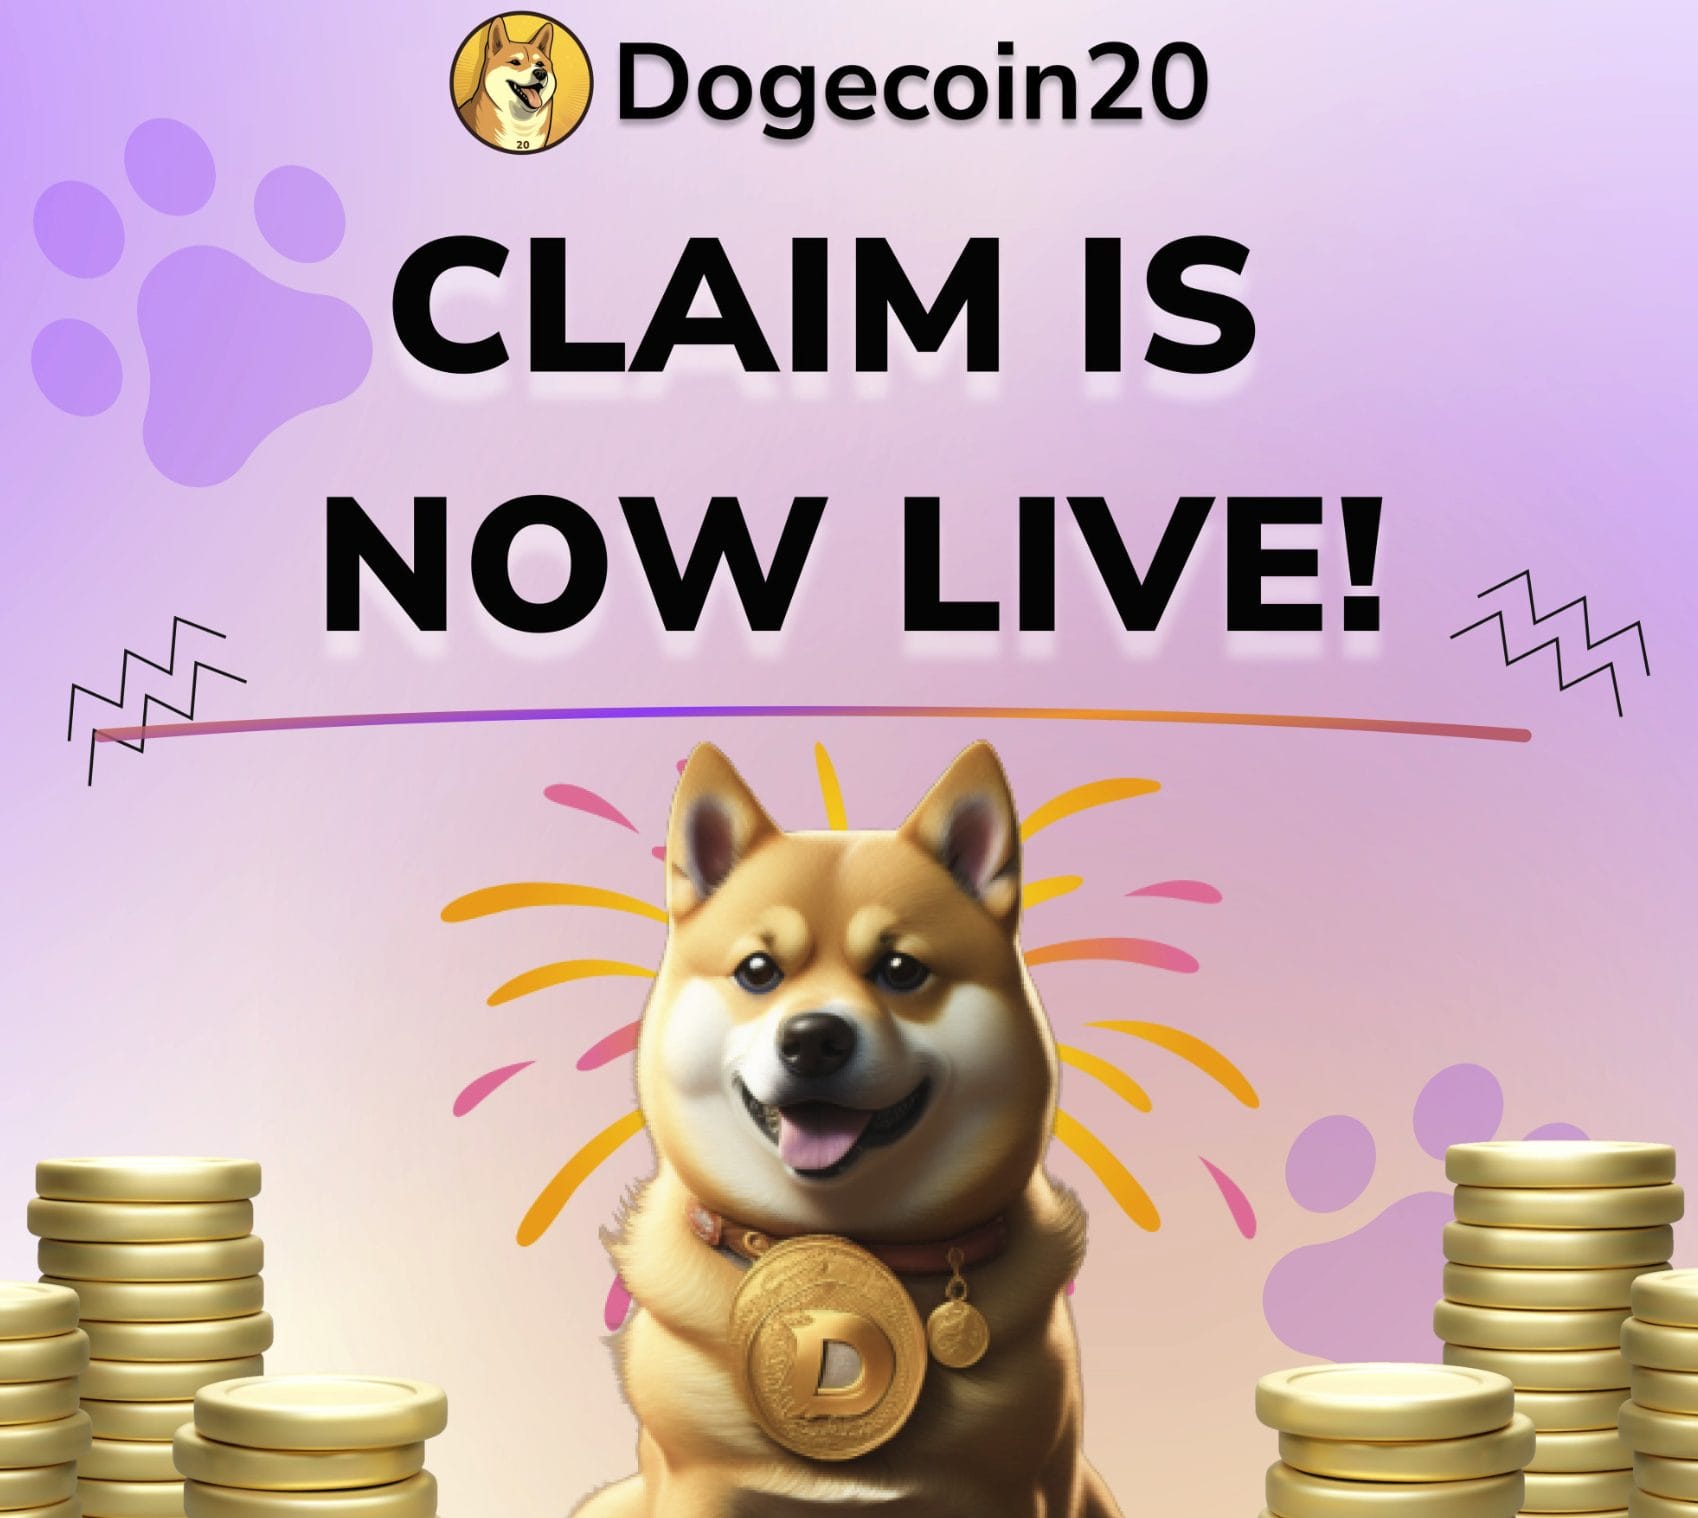 كلب من نوع شيبا إينو يرتدي عملة Doge محاطاً بالعملات الذهبية وفوقه إعلان عن بدء استلام عملات Dogecoin20